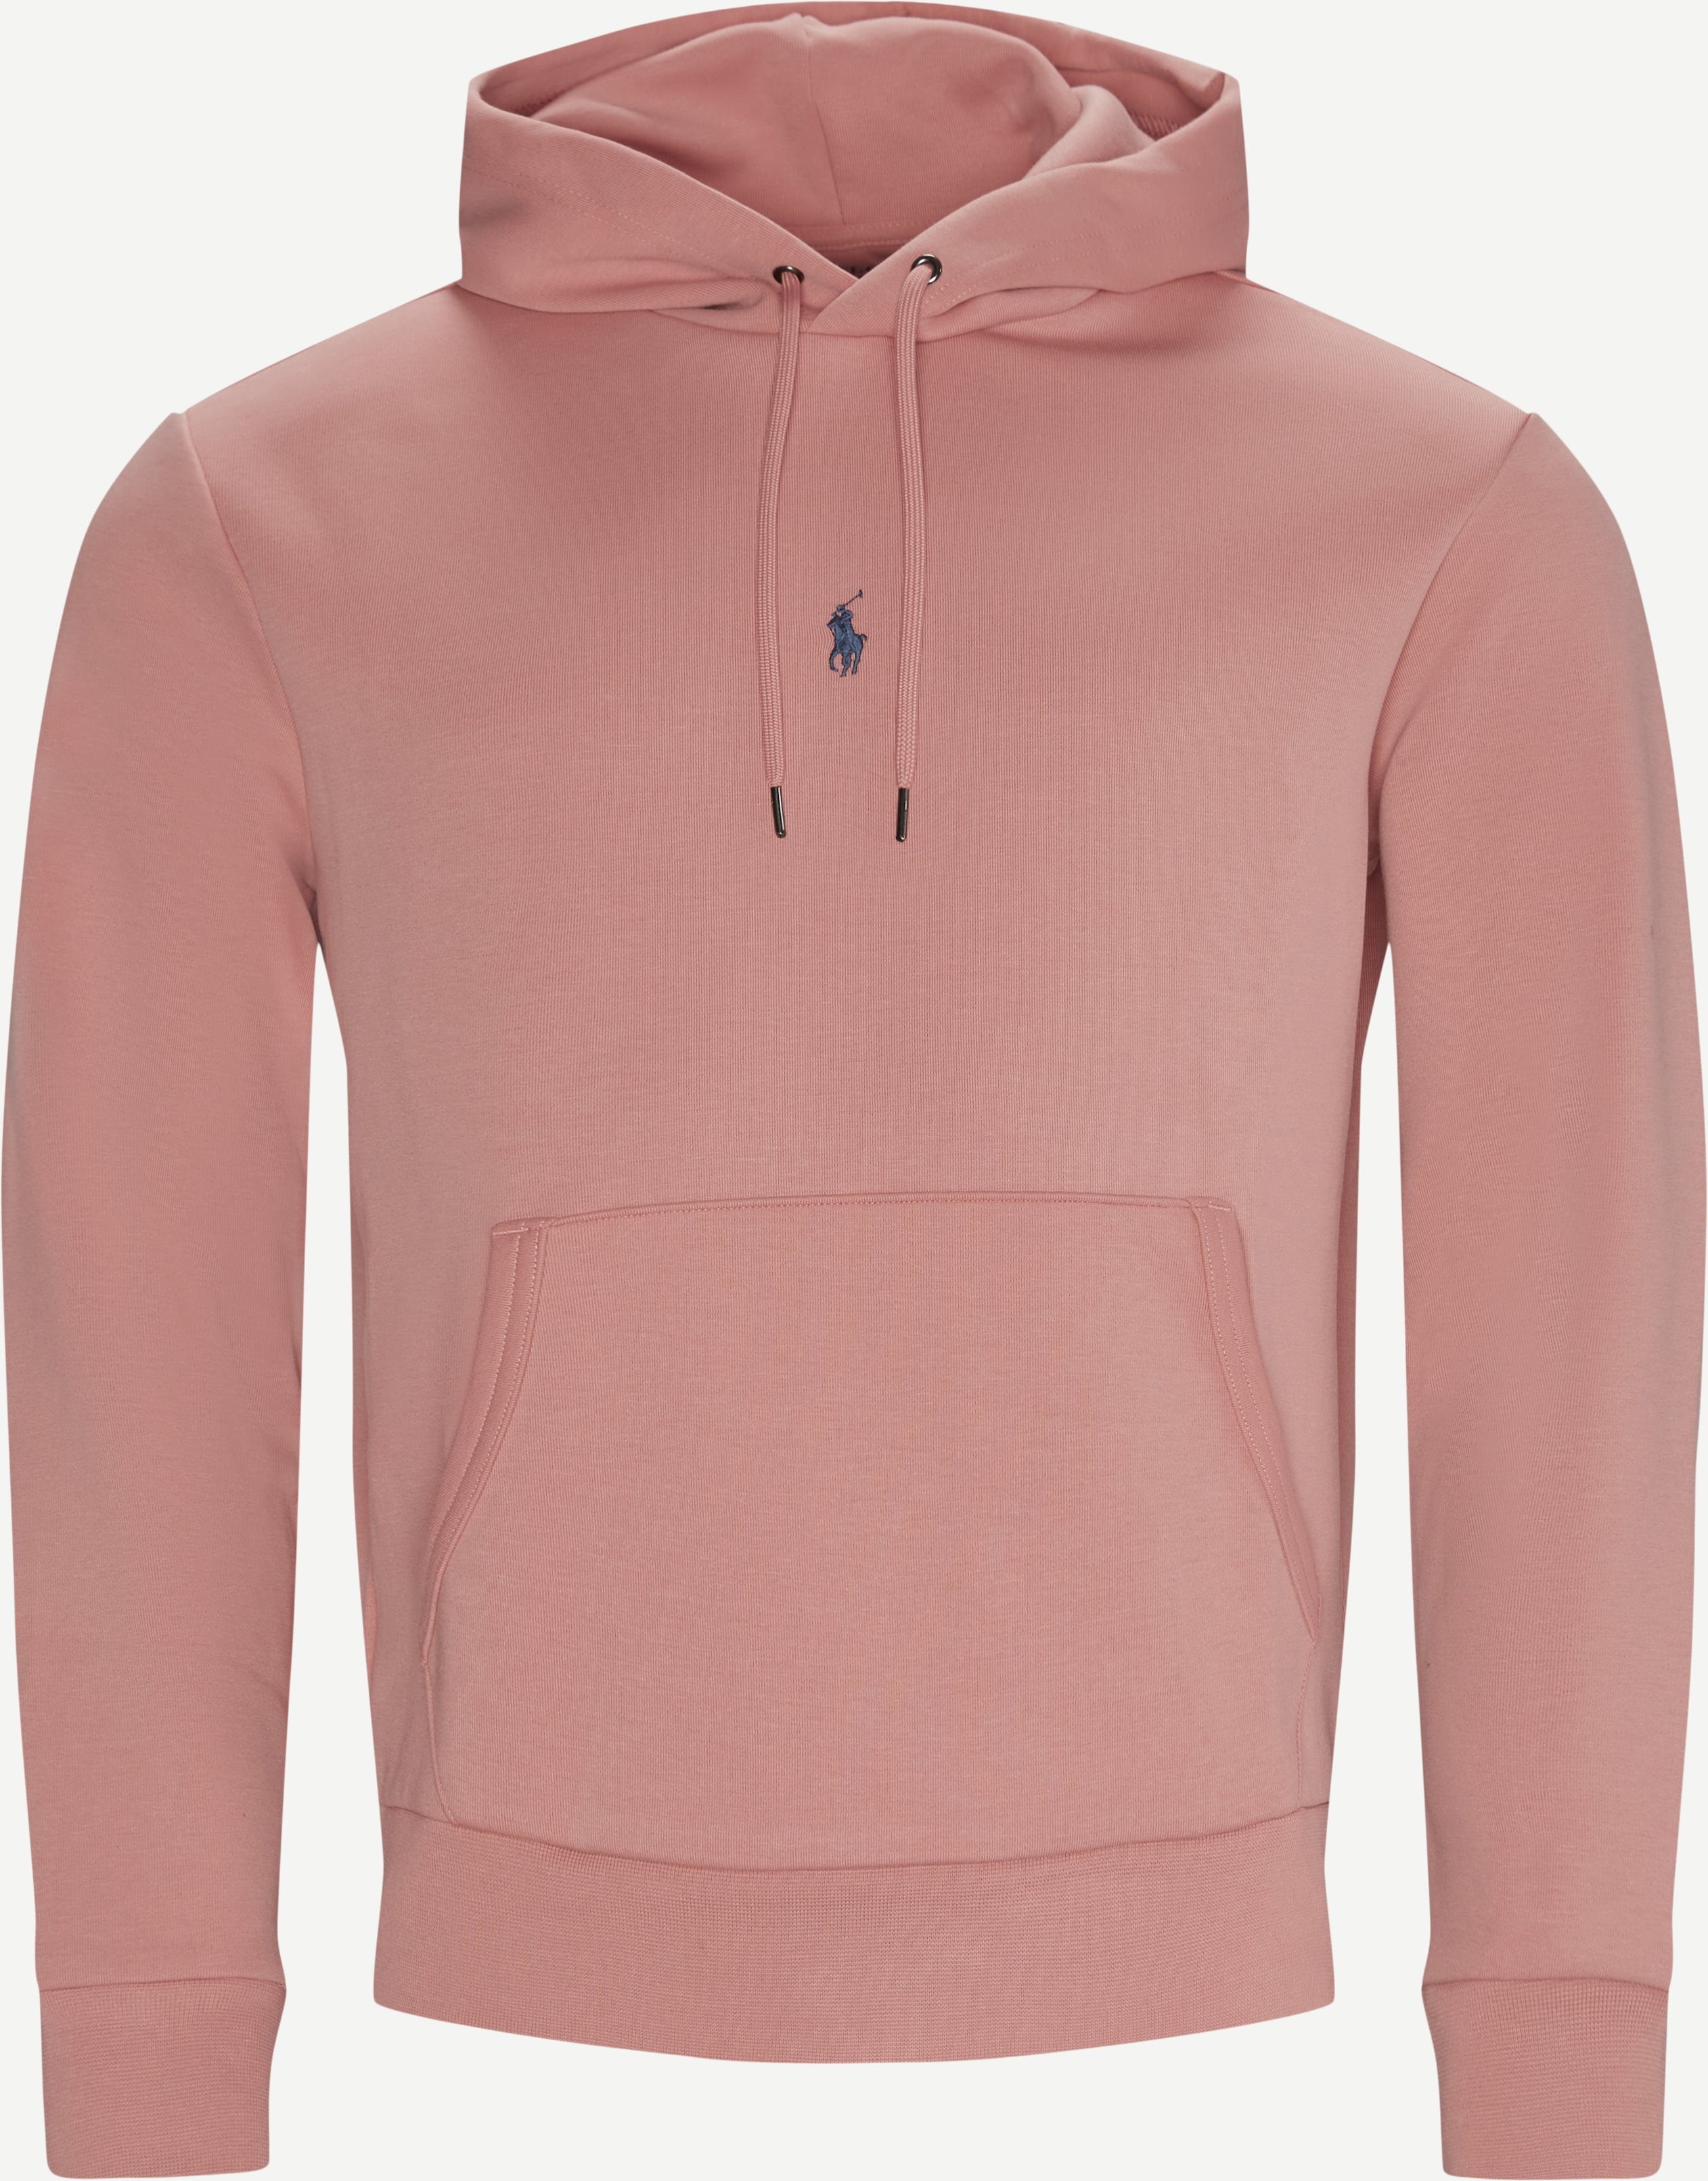 Hoodie Sweatshirt - Sweatshirts - Regular fit - Pink